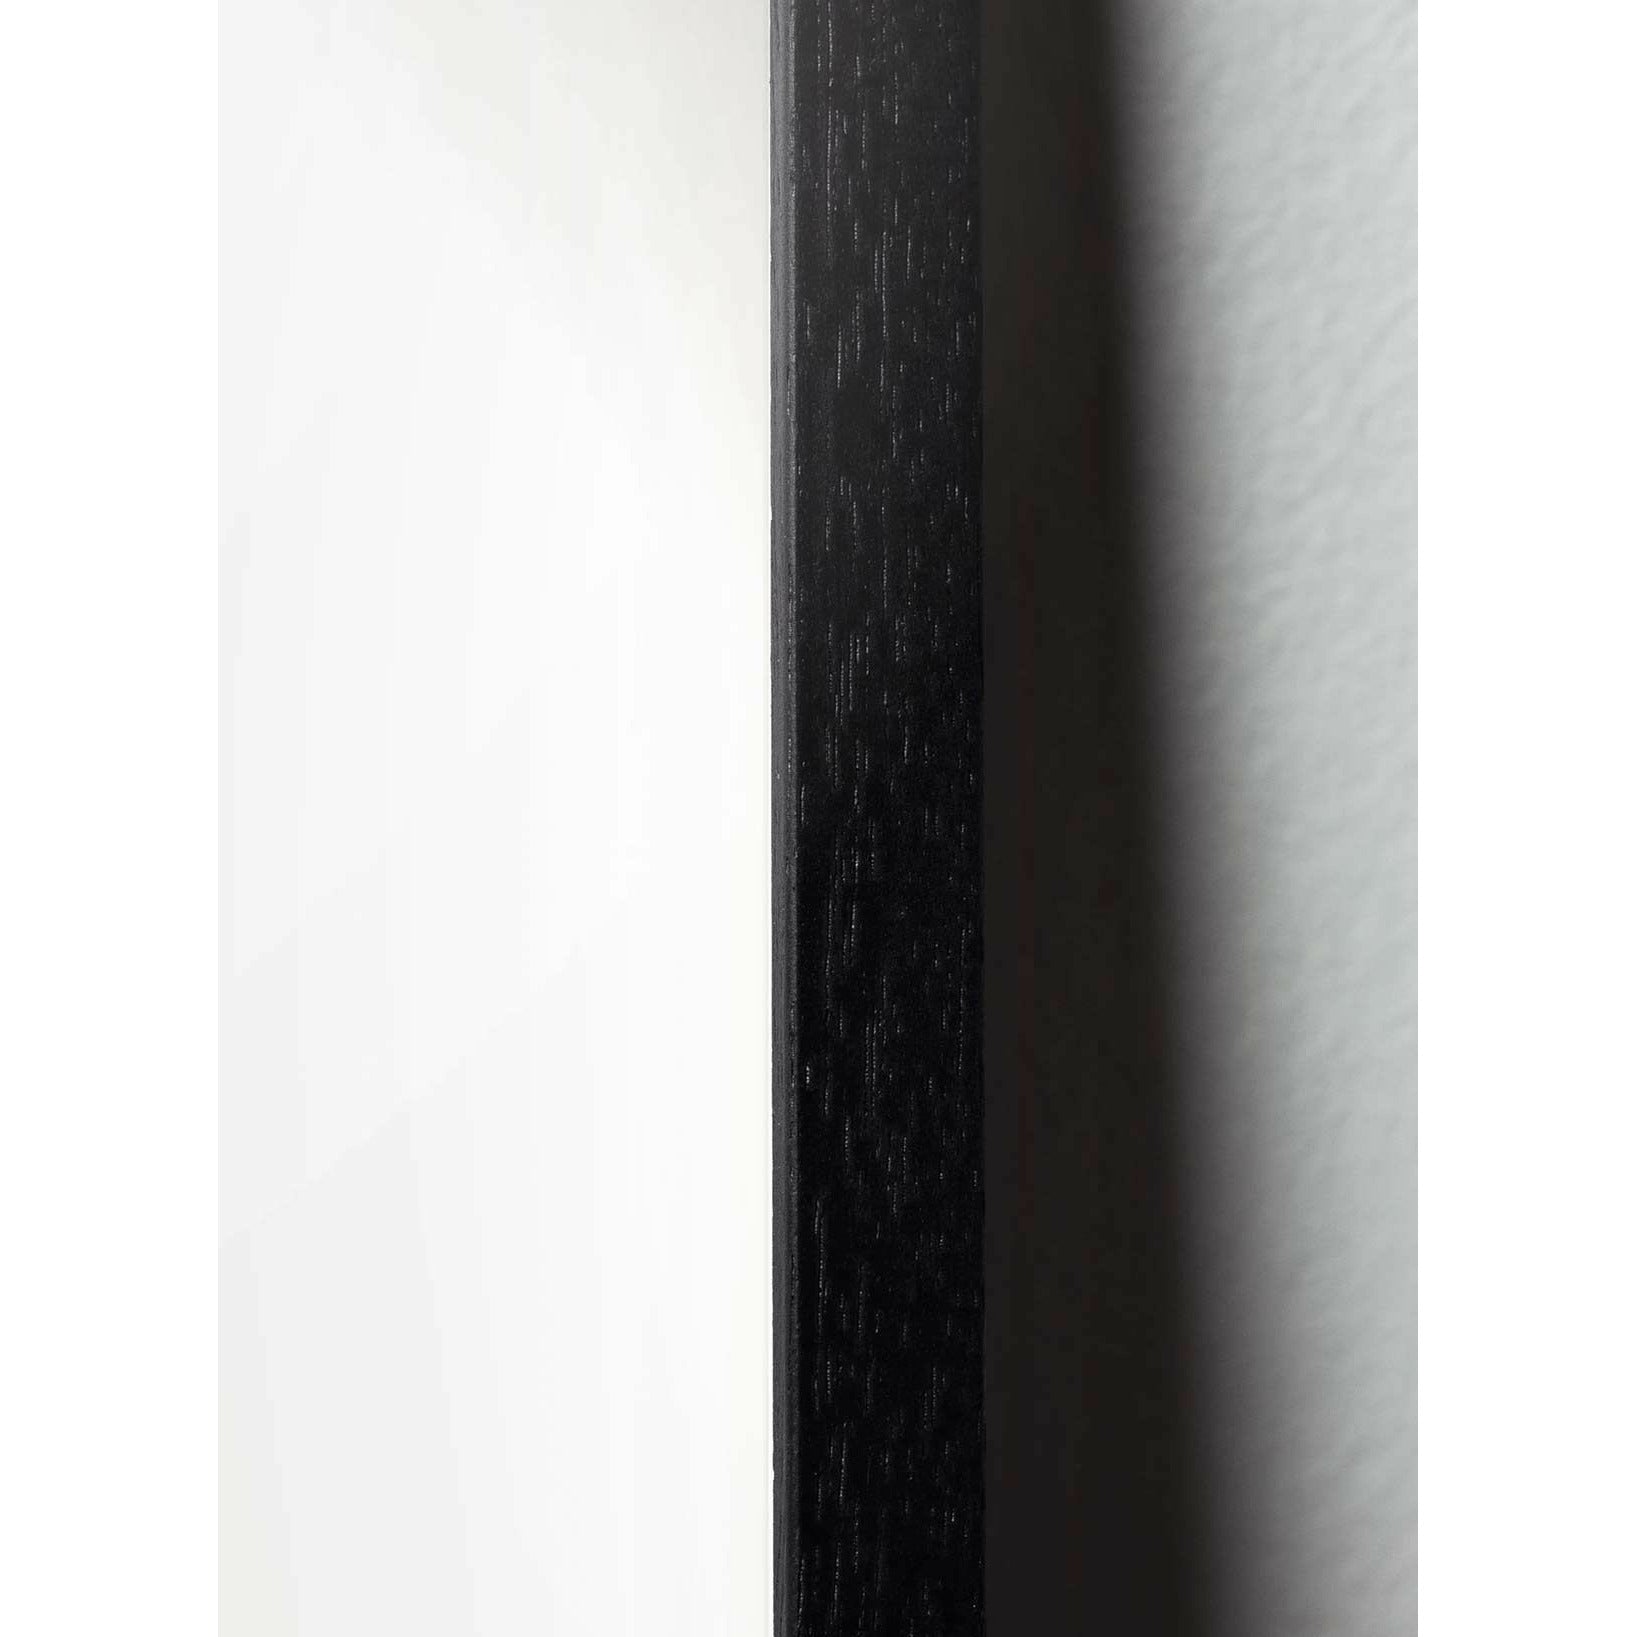 Plakat w formacie jaja pomysłu, rama w czarnym lakierowanym drewnie A5, brązowy